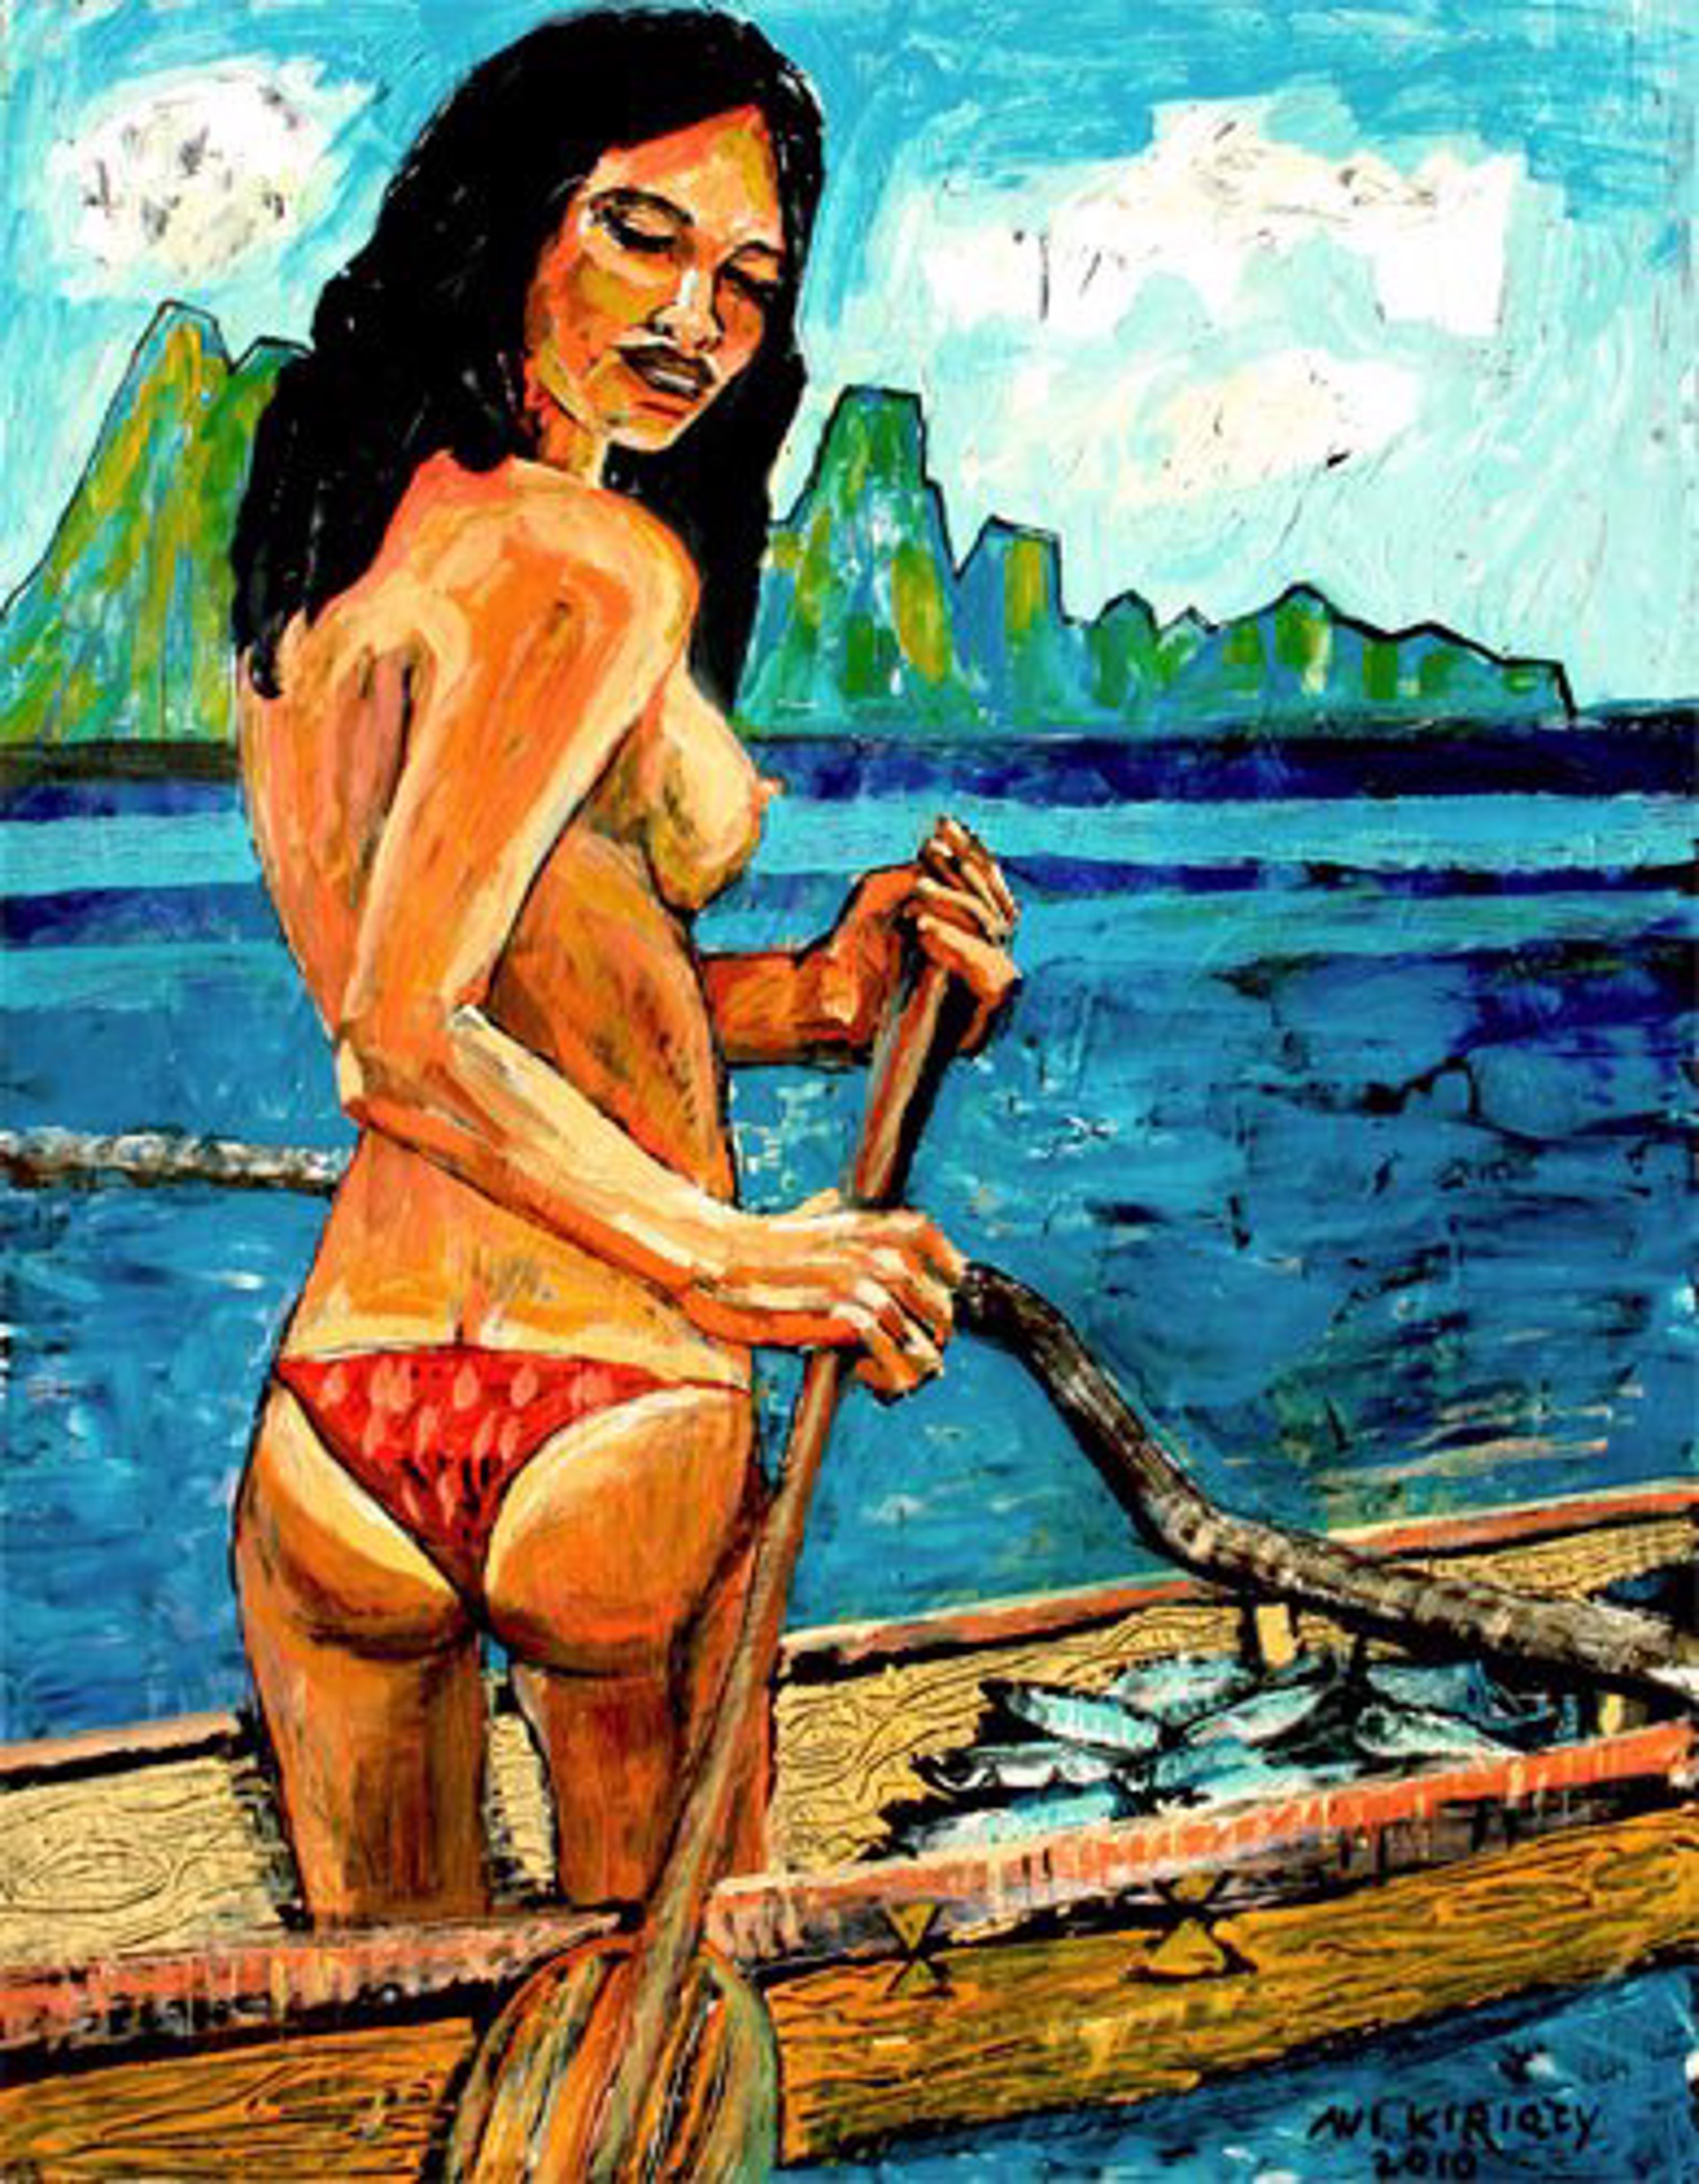 Fishing Maid by Avi Kiriaty